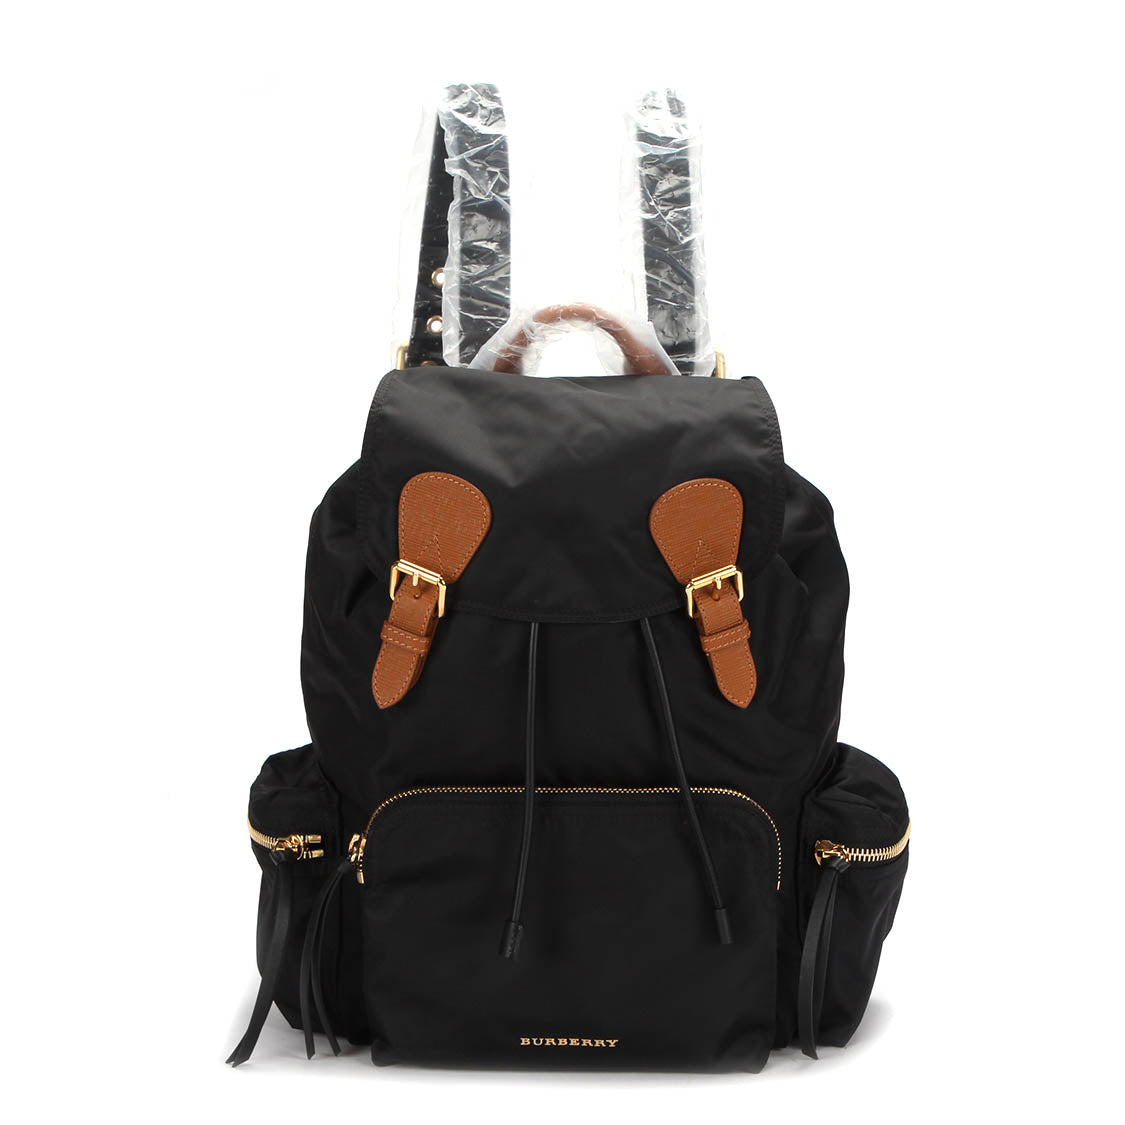 The Rucksack Nylon Backpack